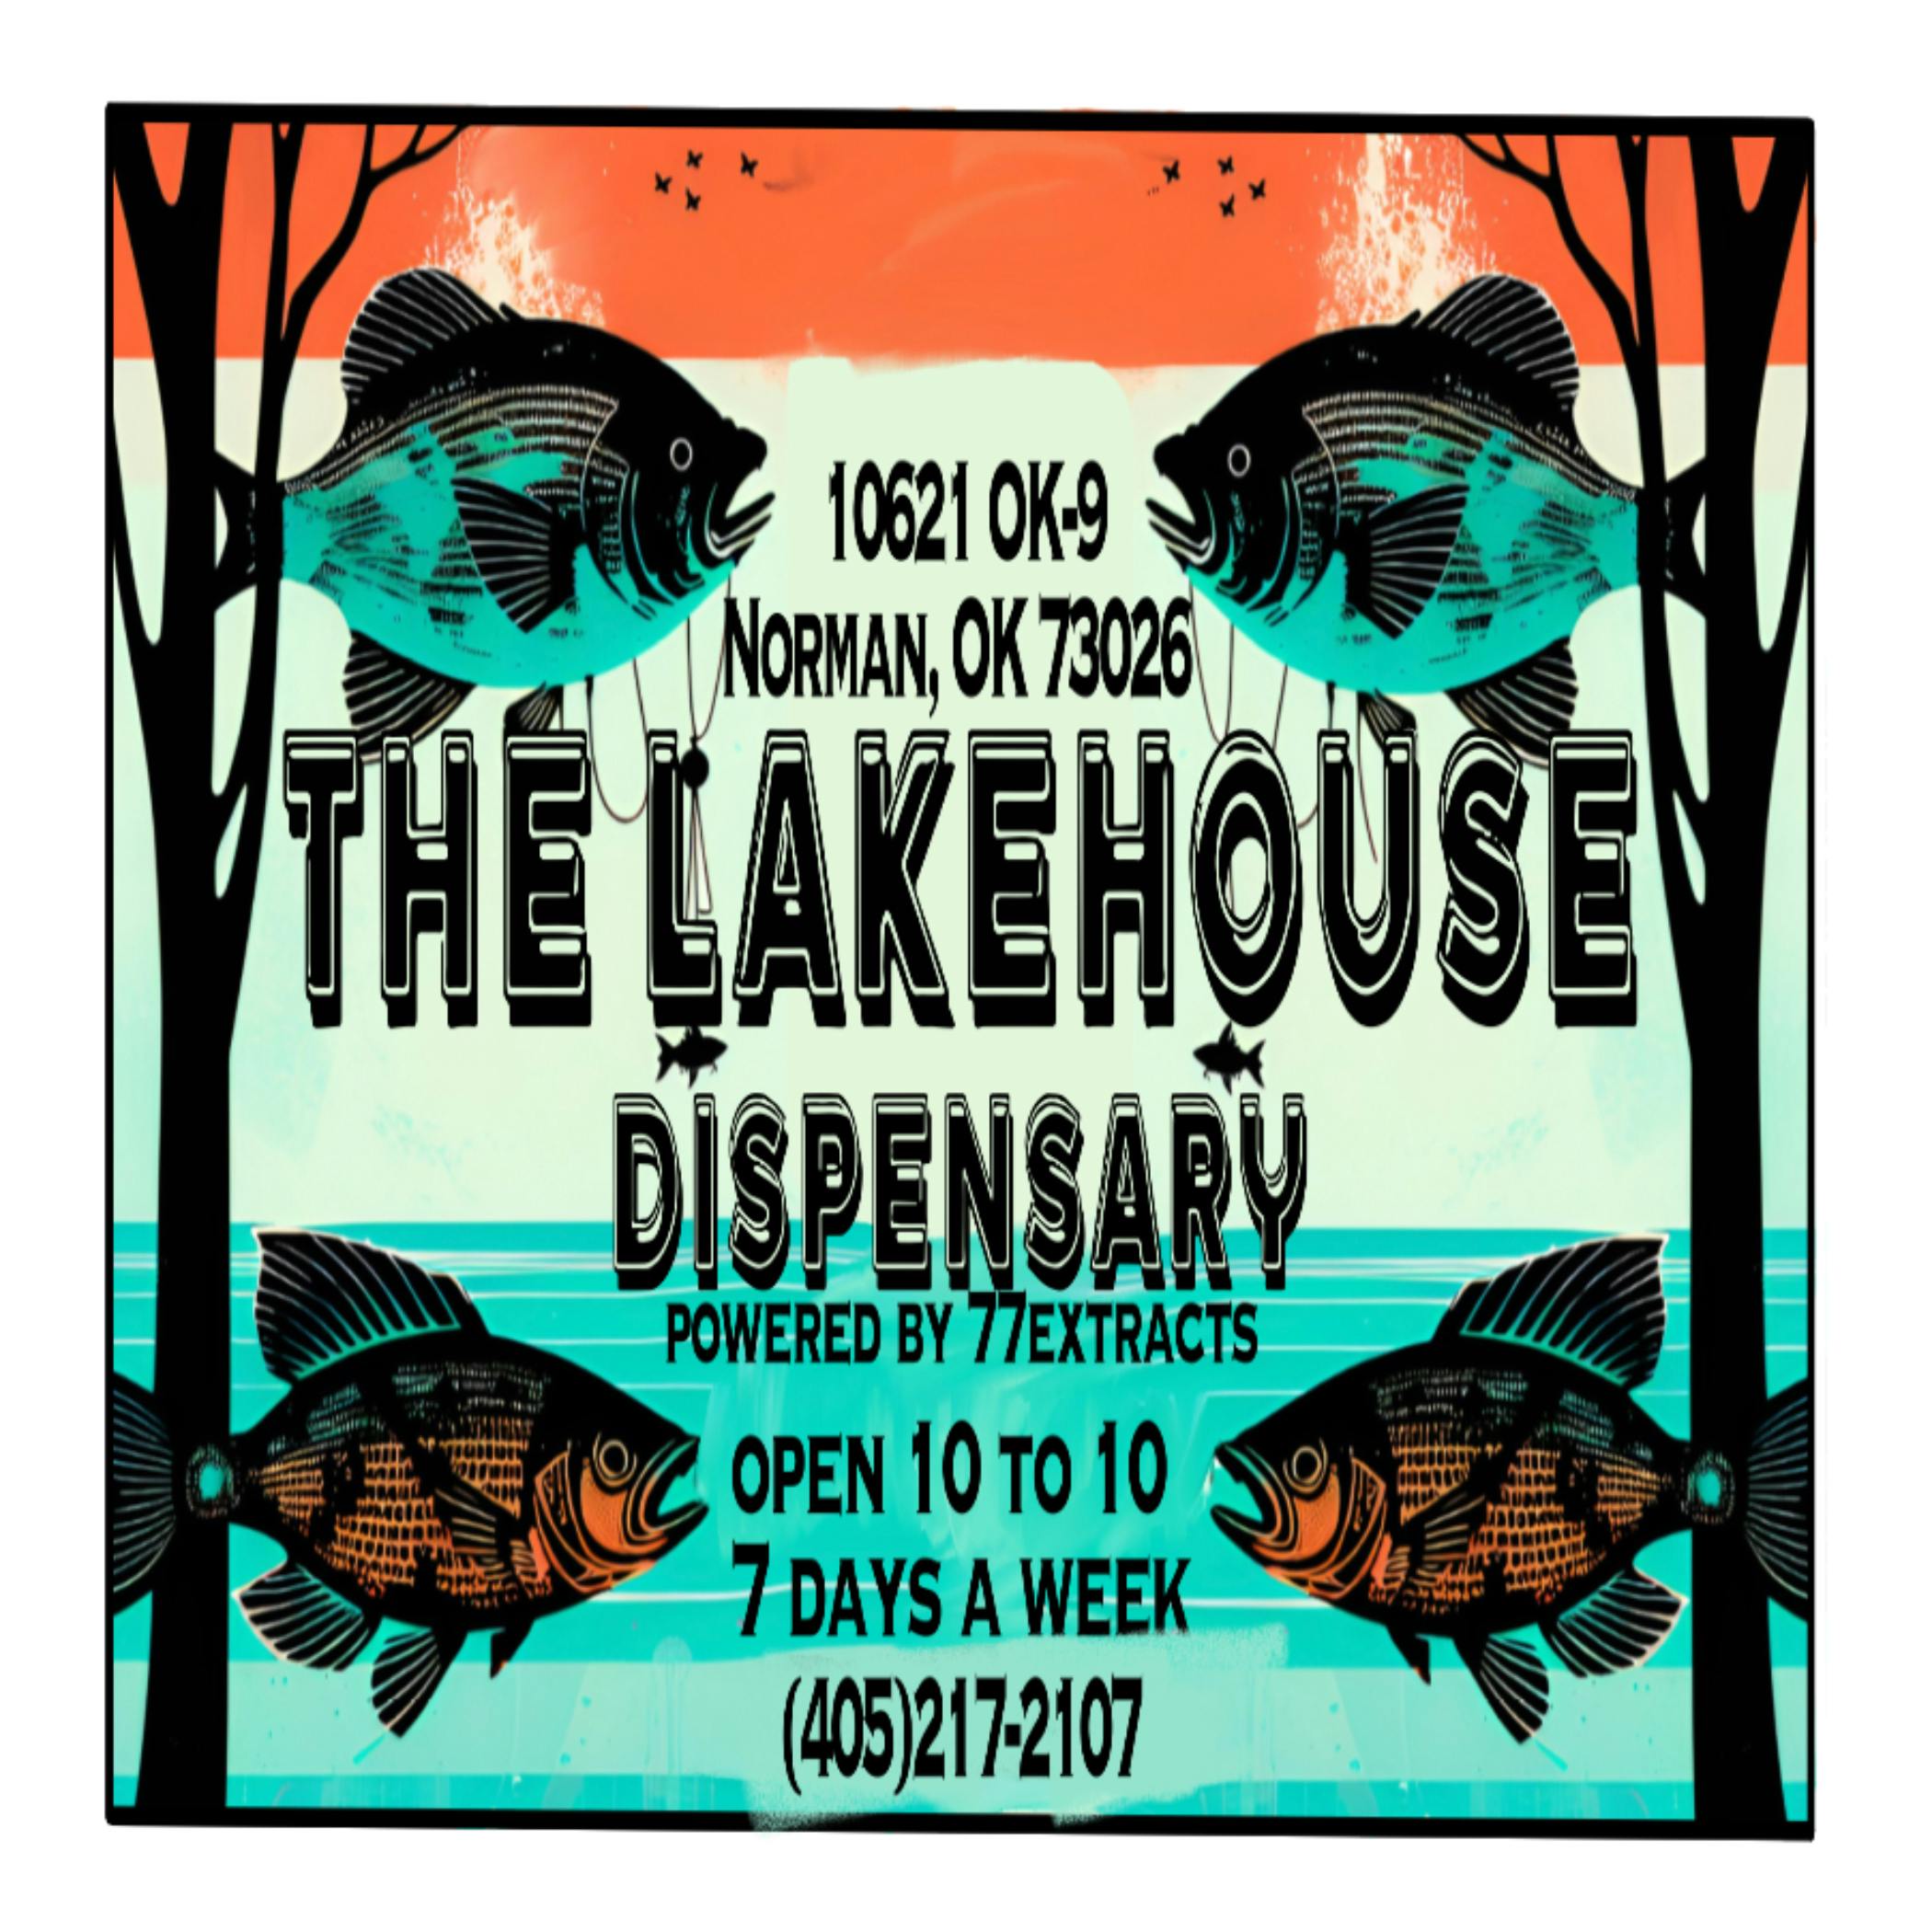 The Lake House Dispensary